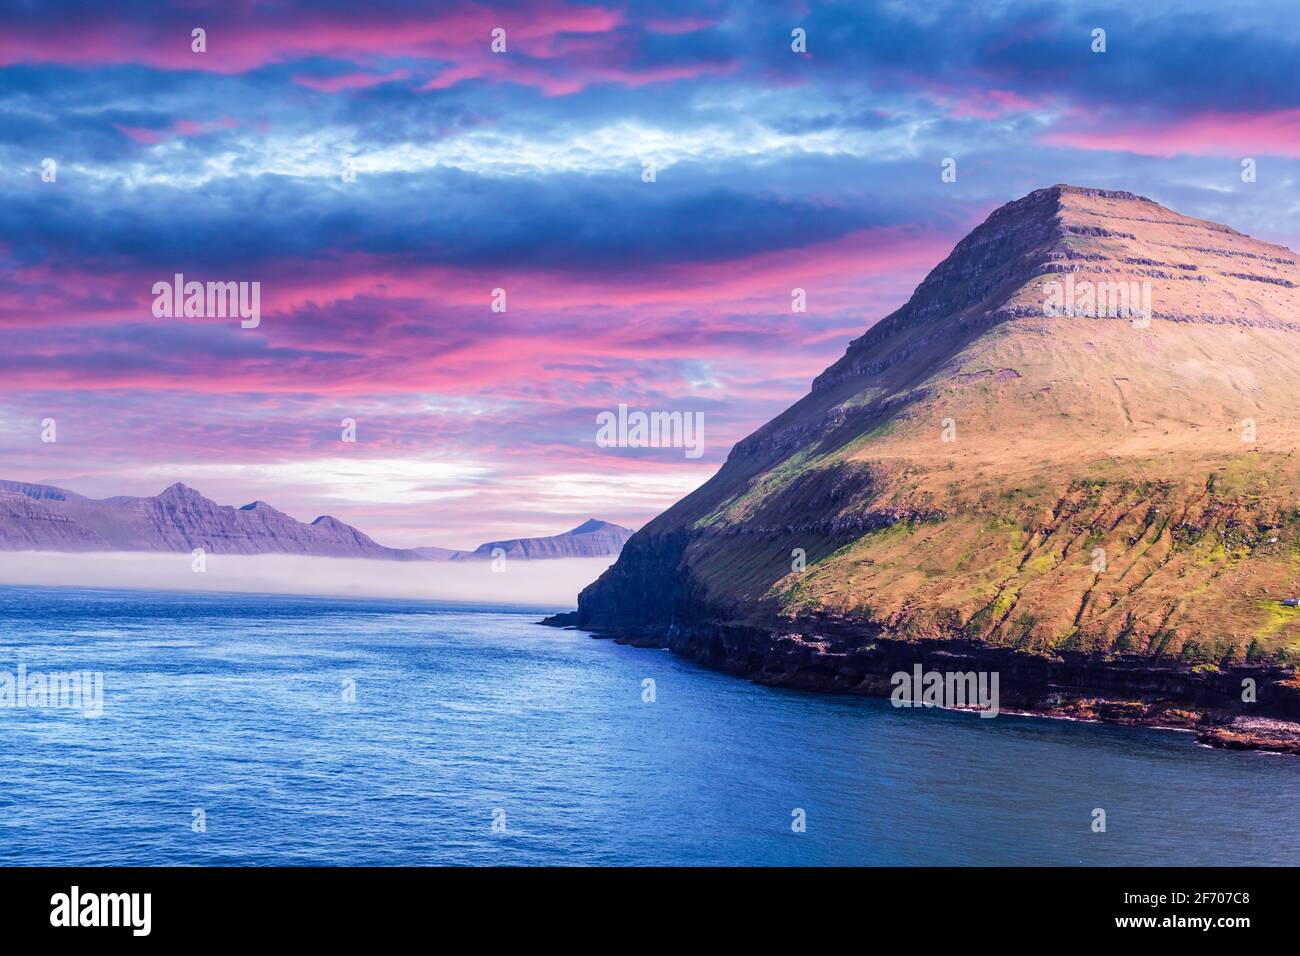 Vista pittoresca sulle montagne delle isole faroesi vicino al villaggio di Gjogv sull'isola di Eysturoy, Isole Faroe, Danimarca. Fotografia di paesaggio Foto Stock